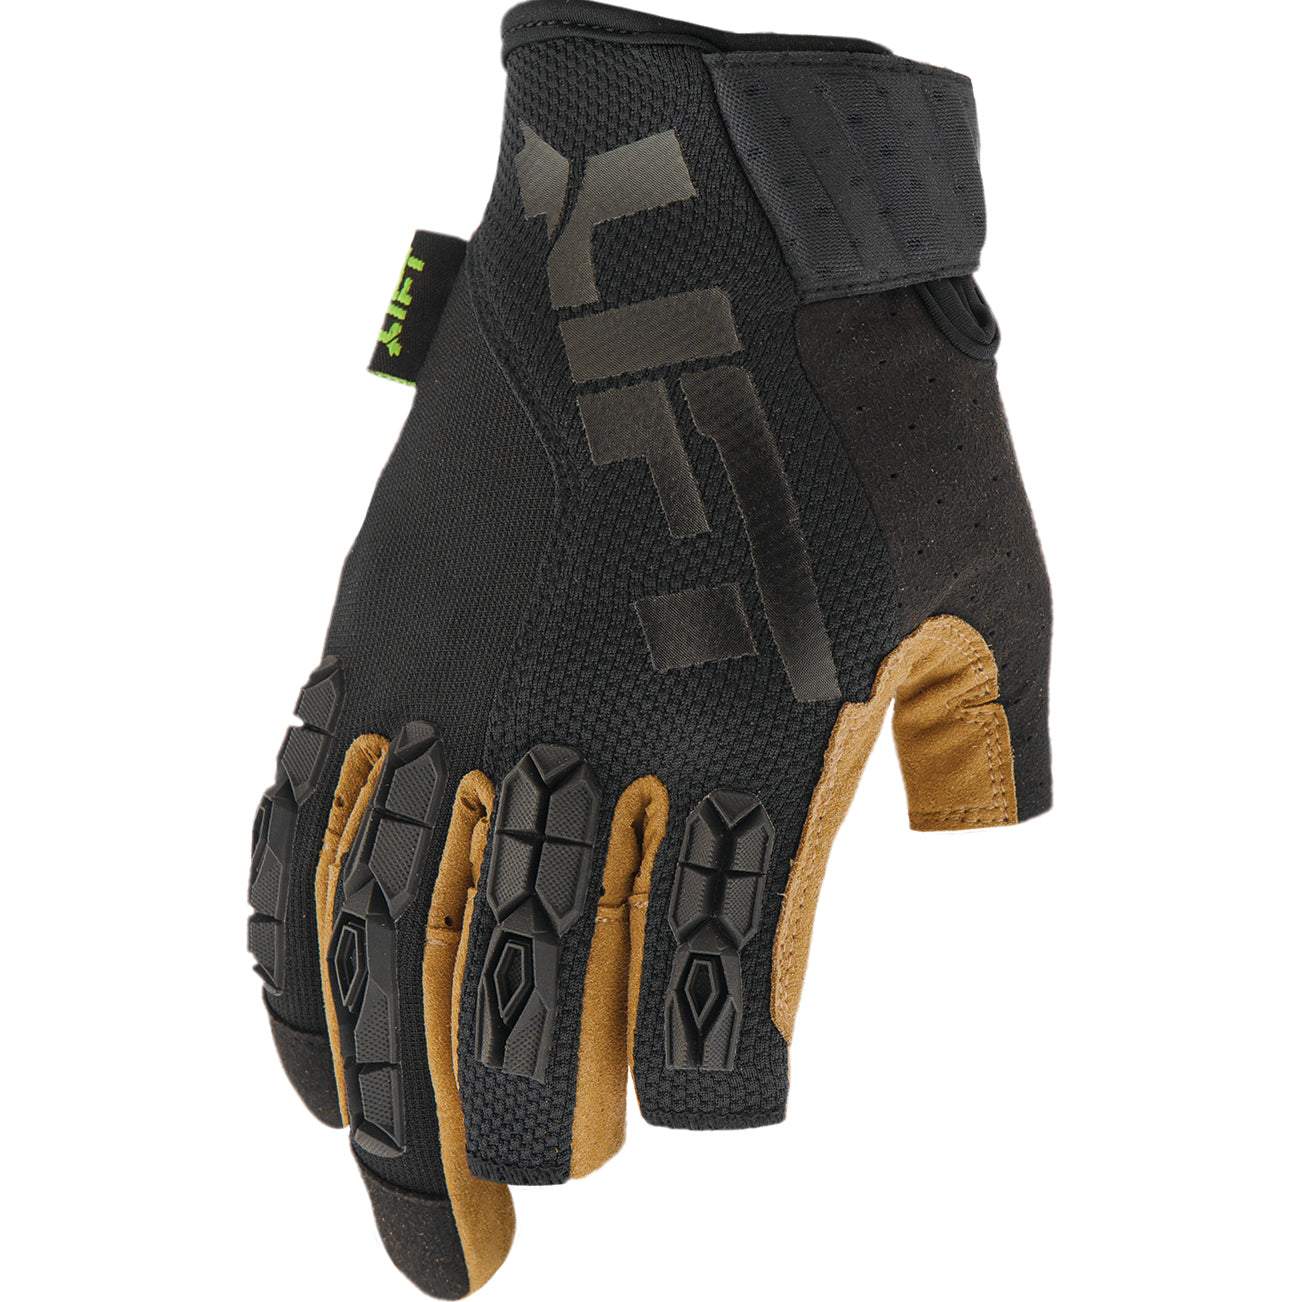 Lift Safety Framed Glove | Brown/Black